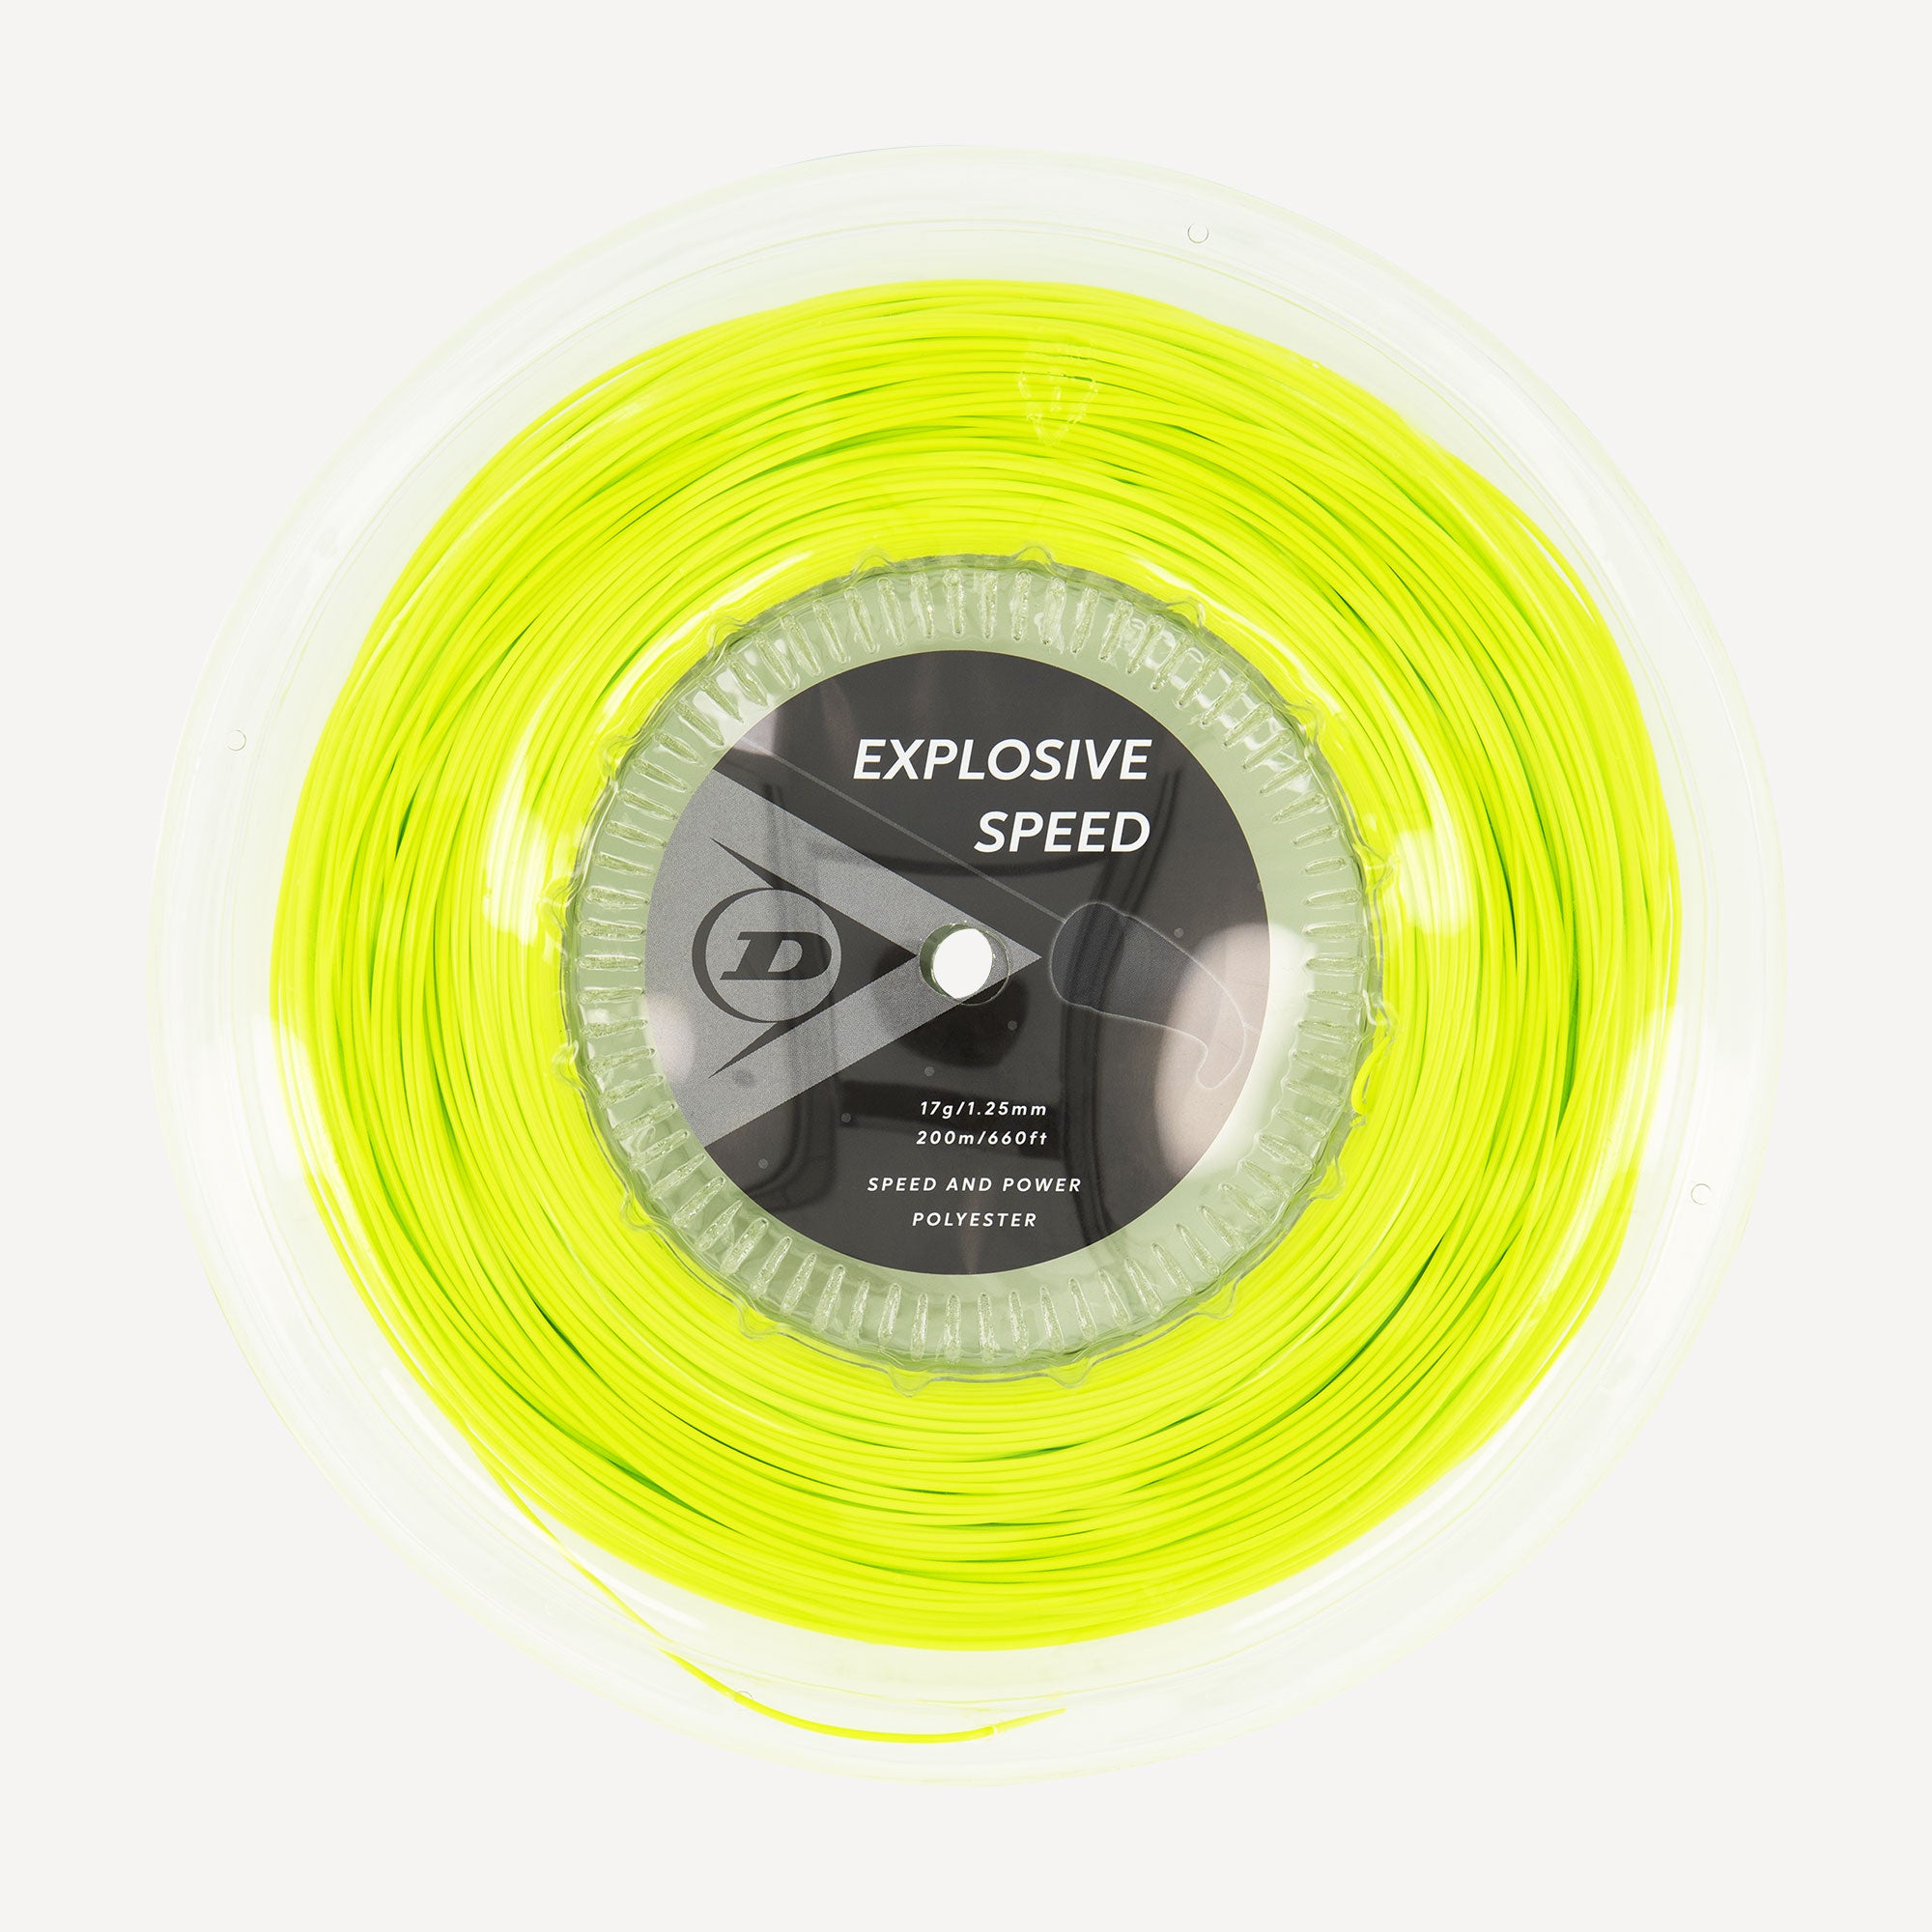 Dunlop Explosive Speed Tennis String Reel 200m Yellow